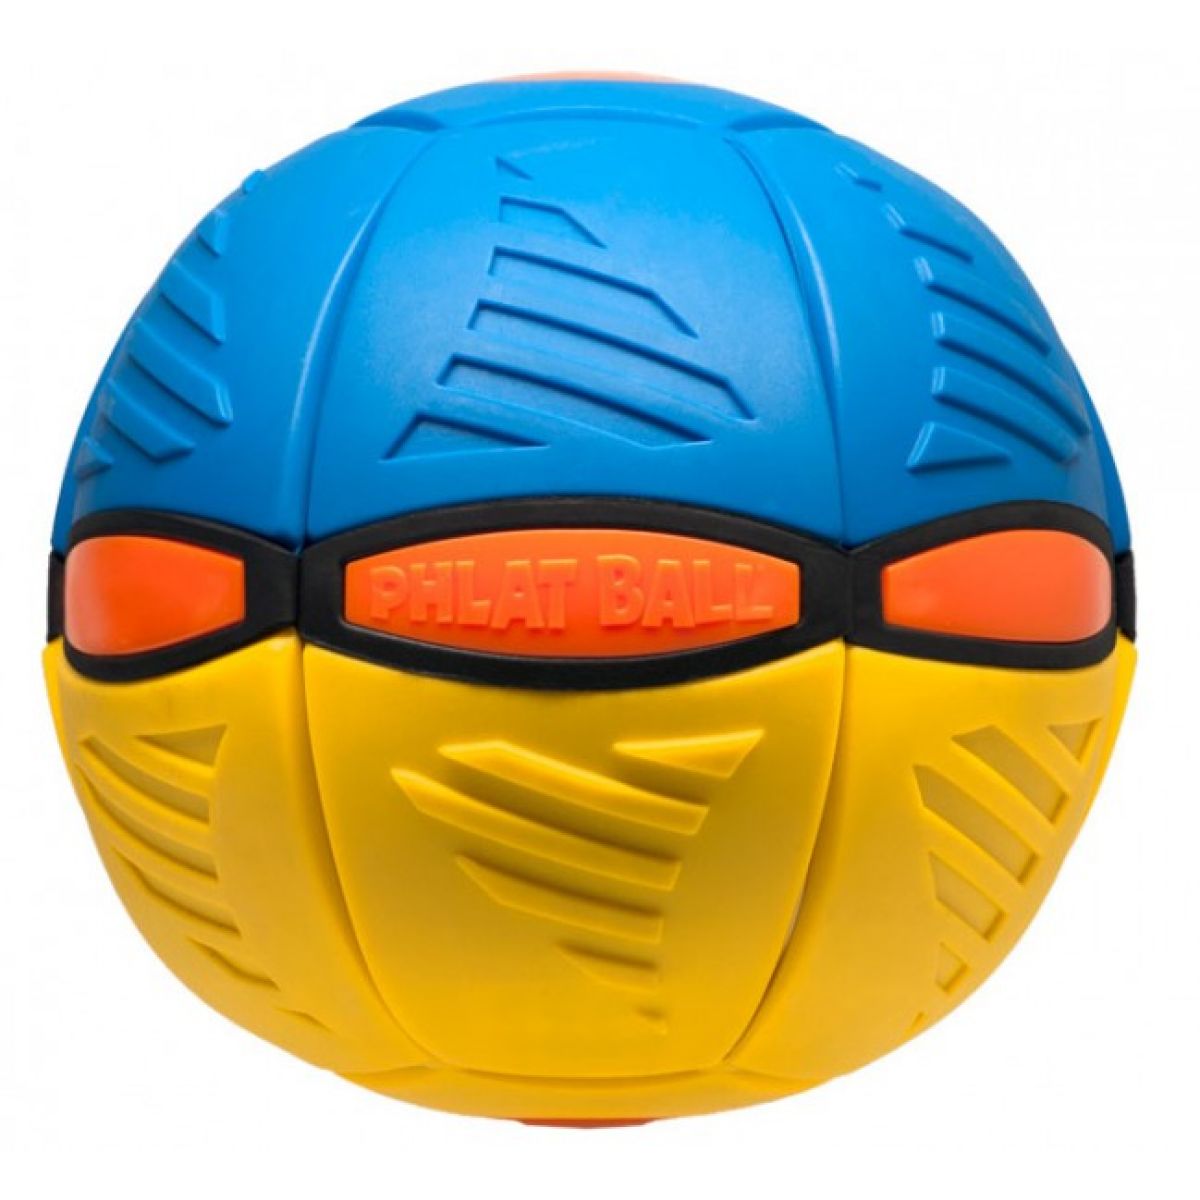 Phlat Ball V3 - Žlto-modrá